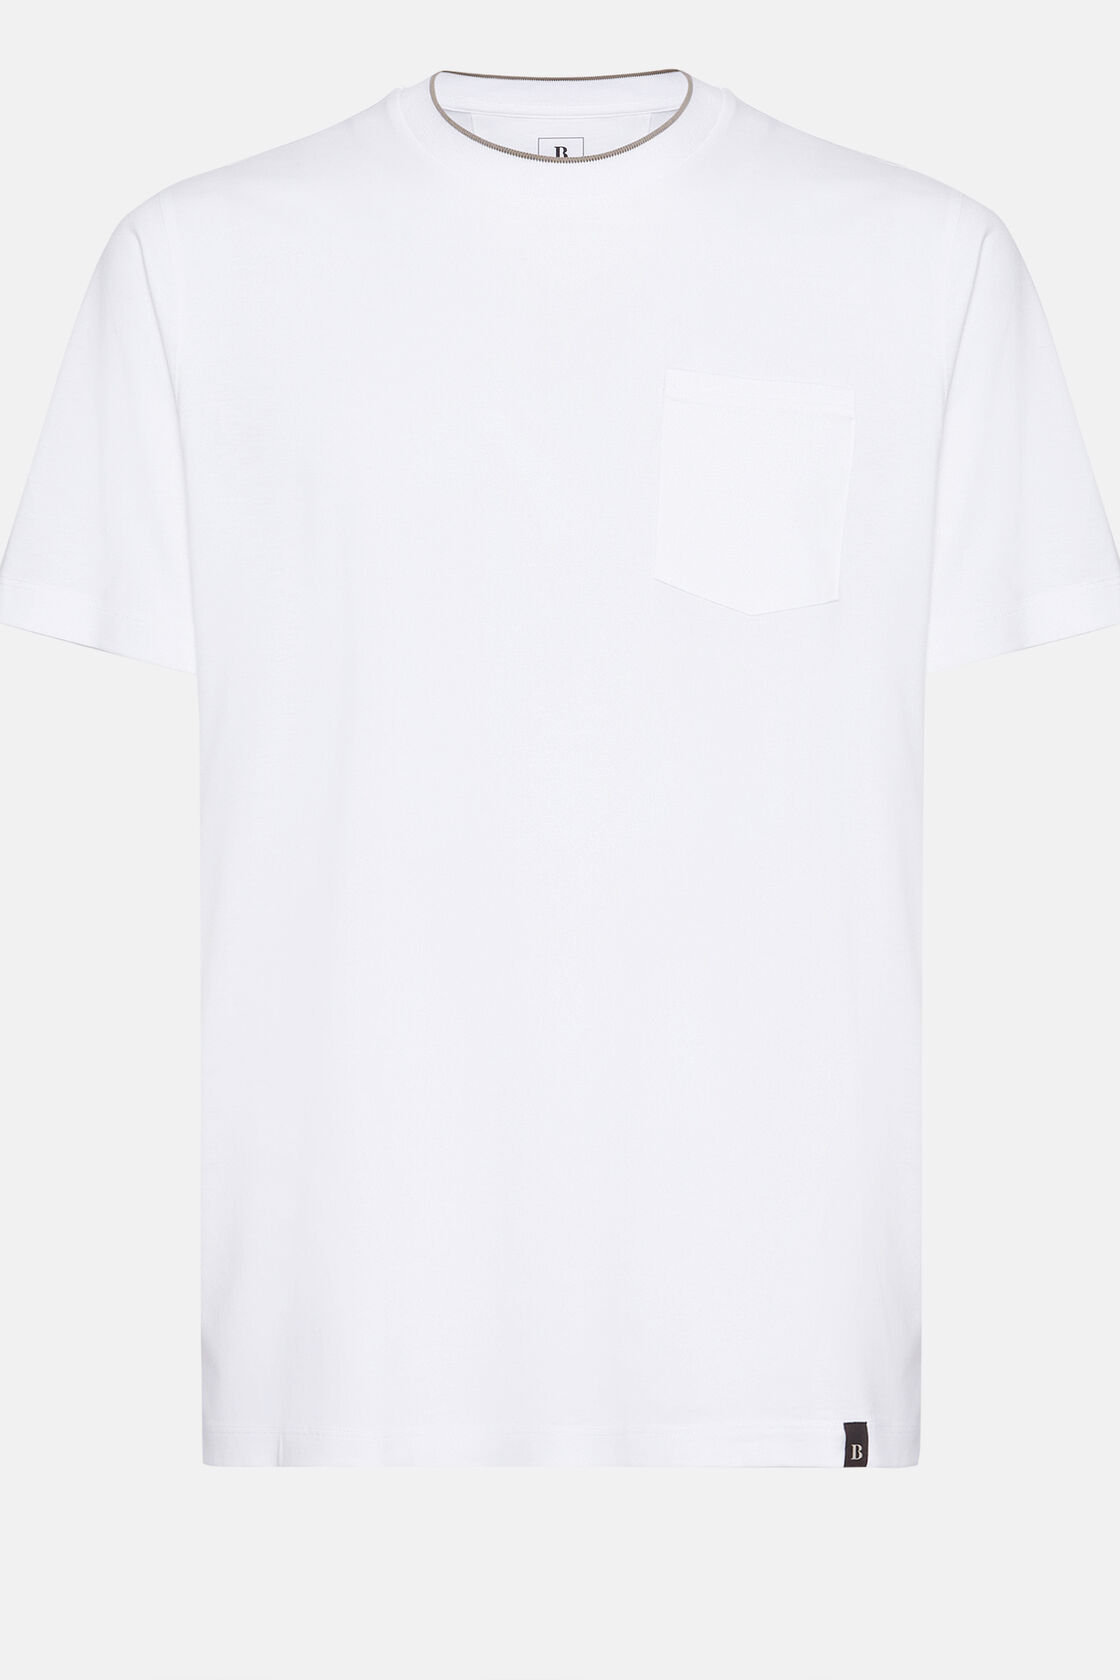 T-shirt in katoen en tencel jersey, White, hi-res